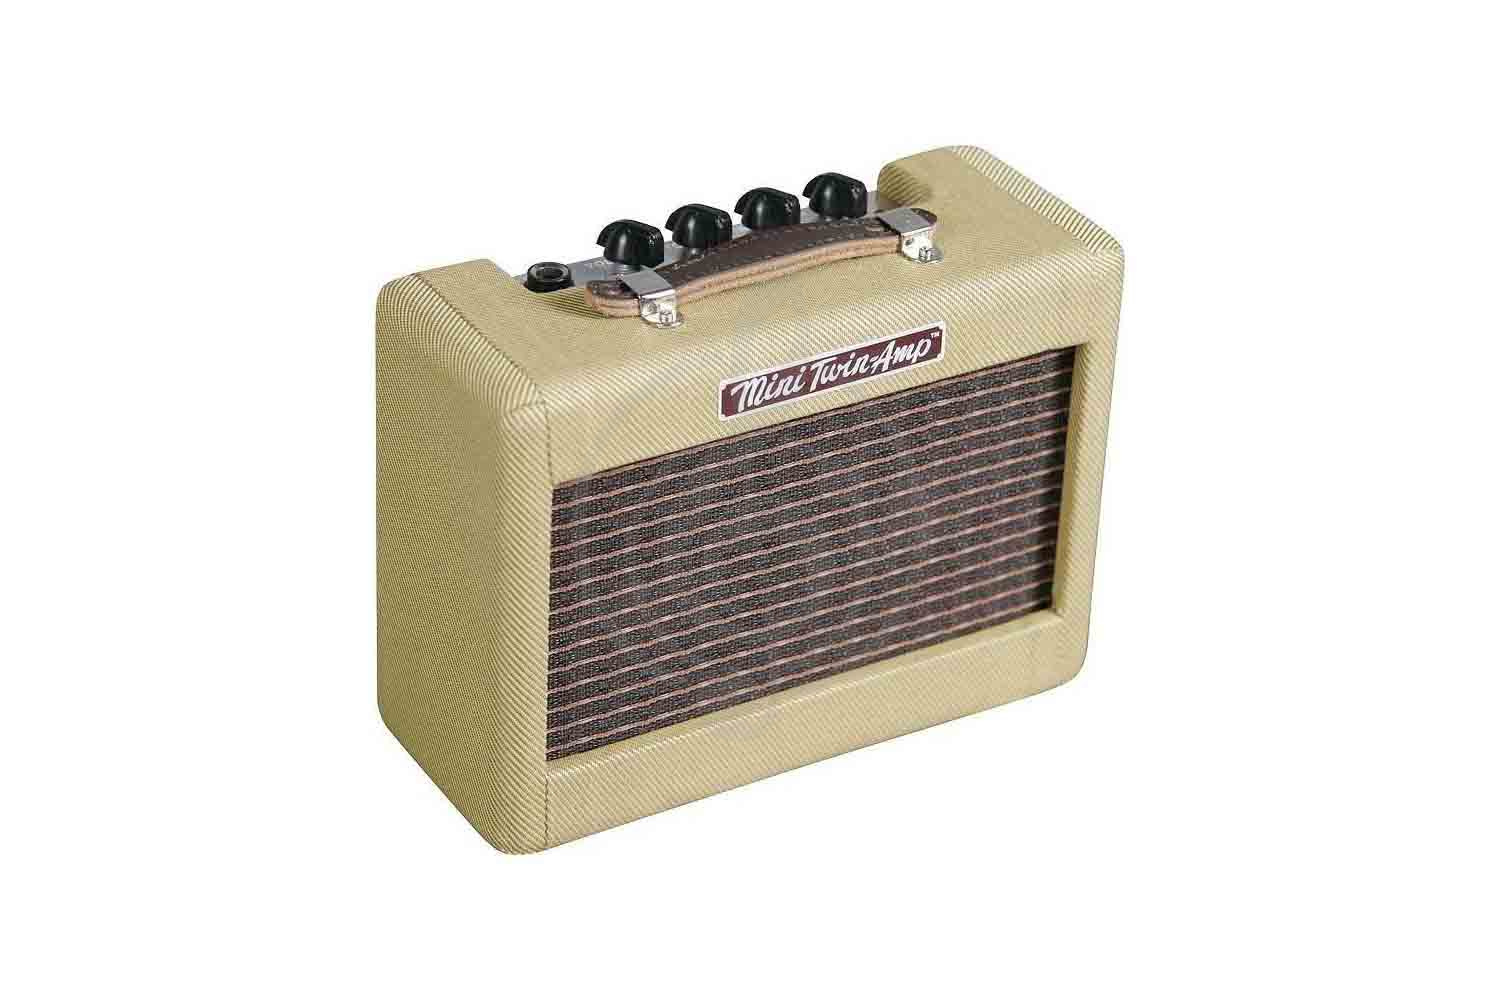 Комбоусилитель для электрогитары FENDER MINI '57 TWIN-AMP миниатюрный комбоусилитель, 1 Вт, 2x2', Fender 57 TWIN-AMP в магазине DominantaMusic - фото 1